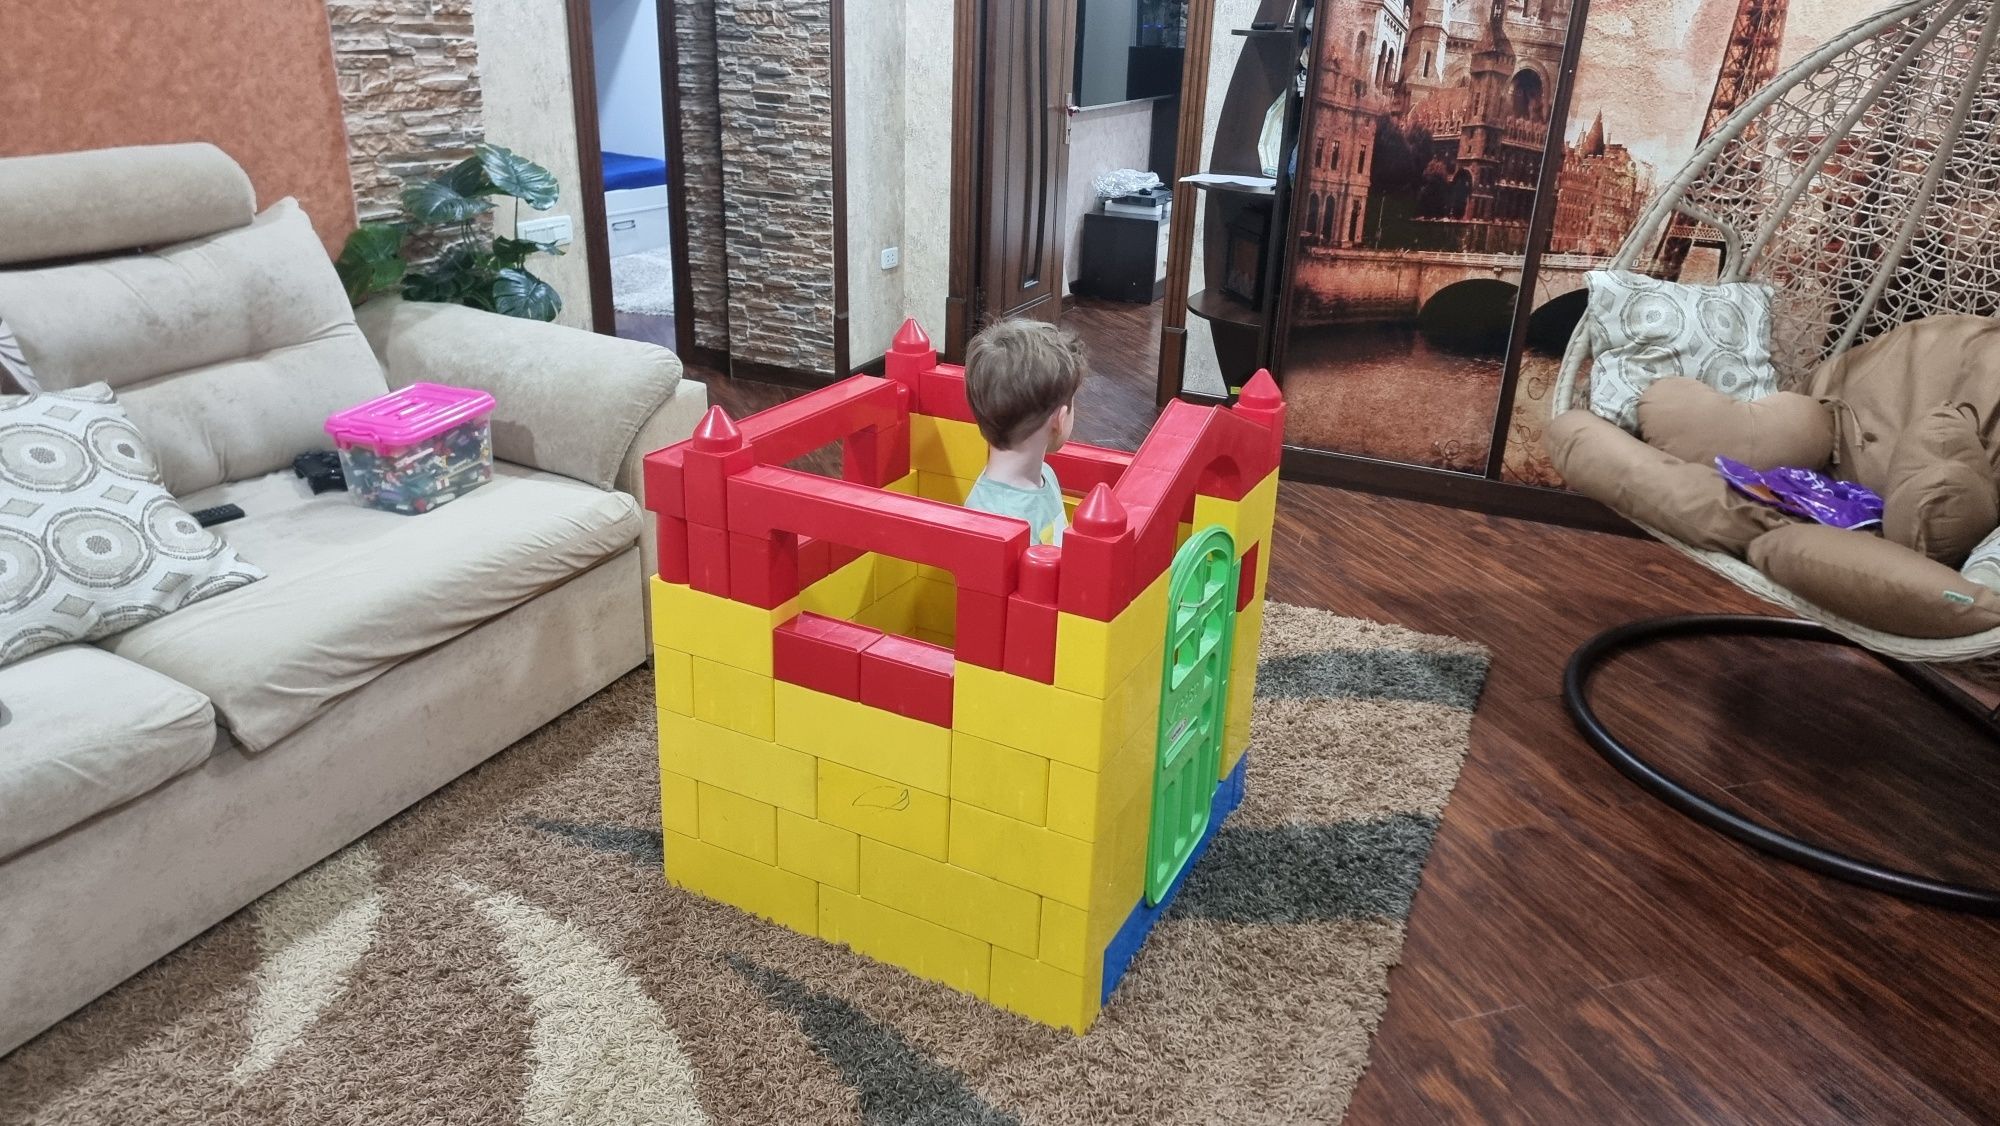 Продаётся домик из большого Лего, привезено из Кореи